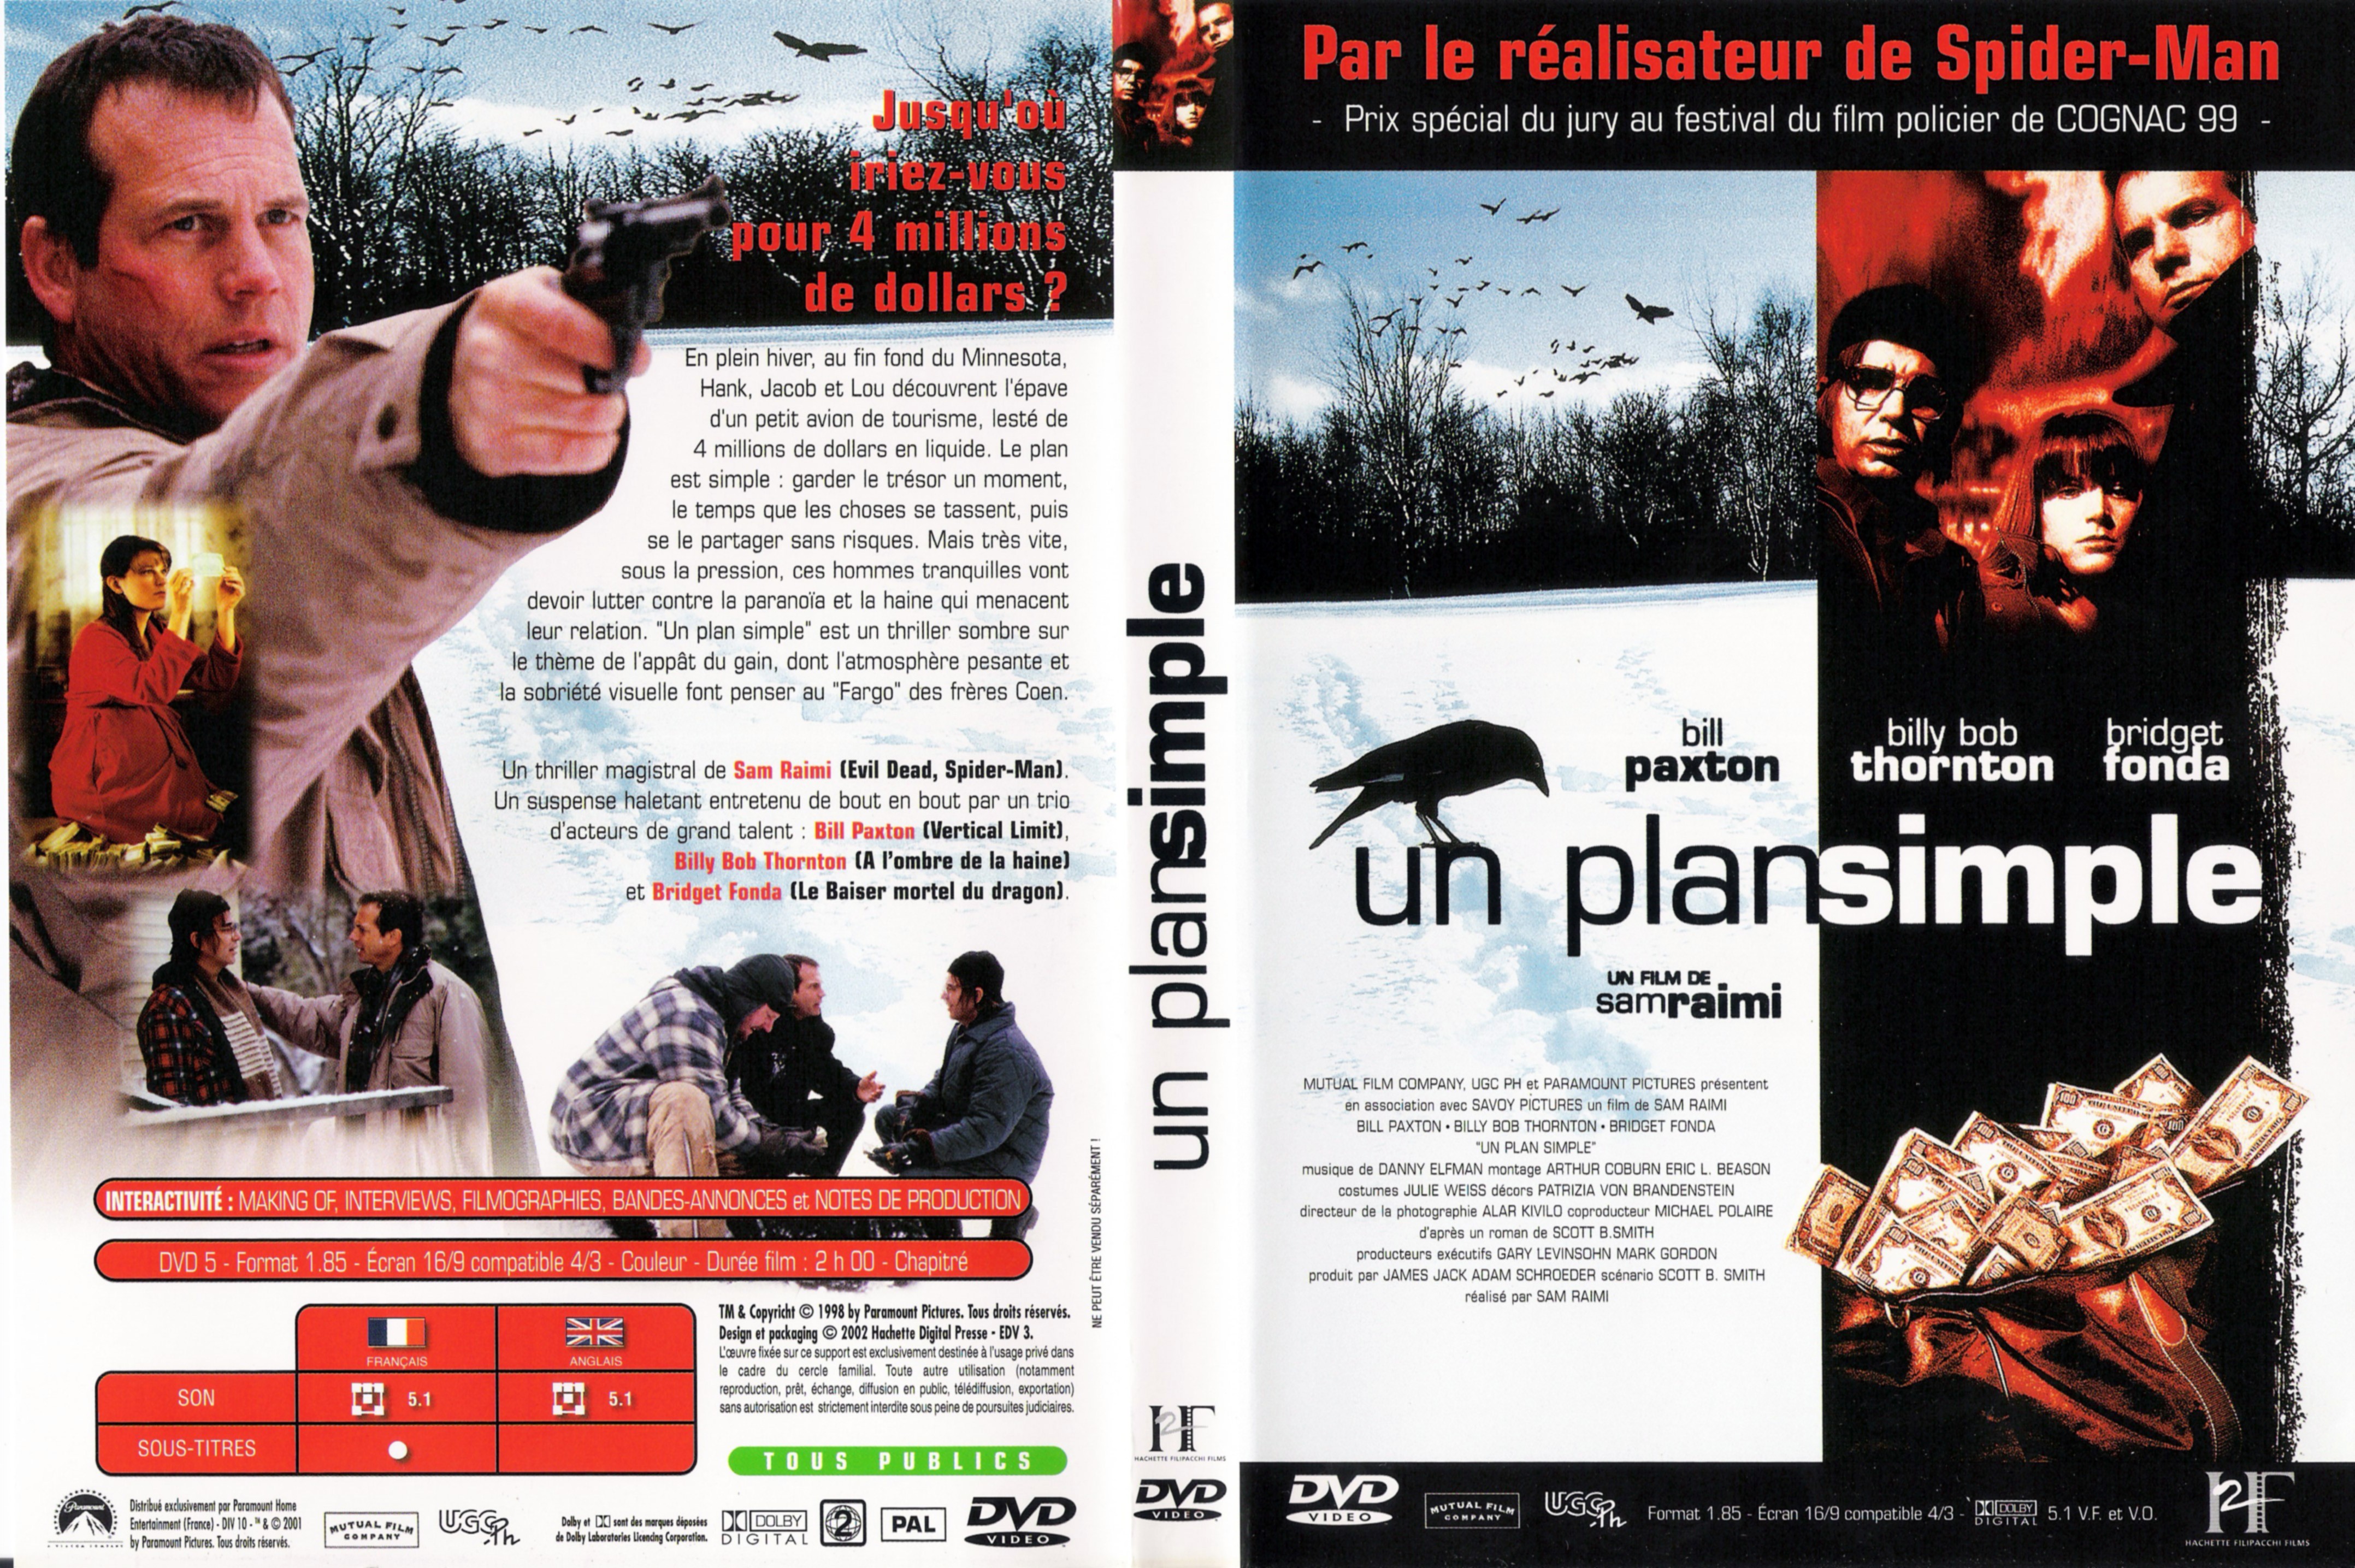 Jaquette DVD Un plan simple v2